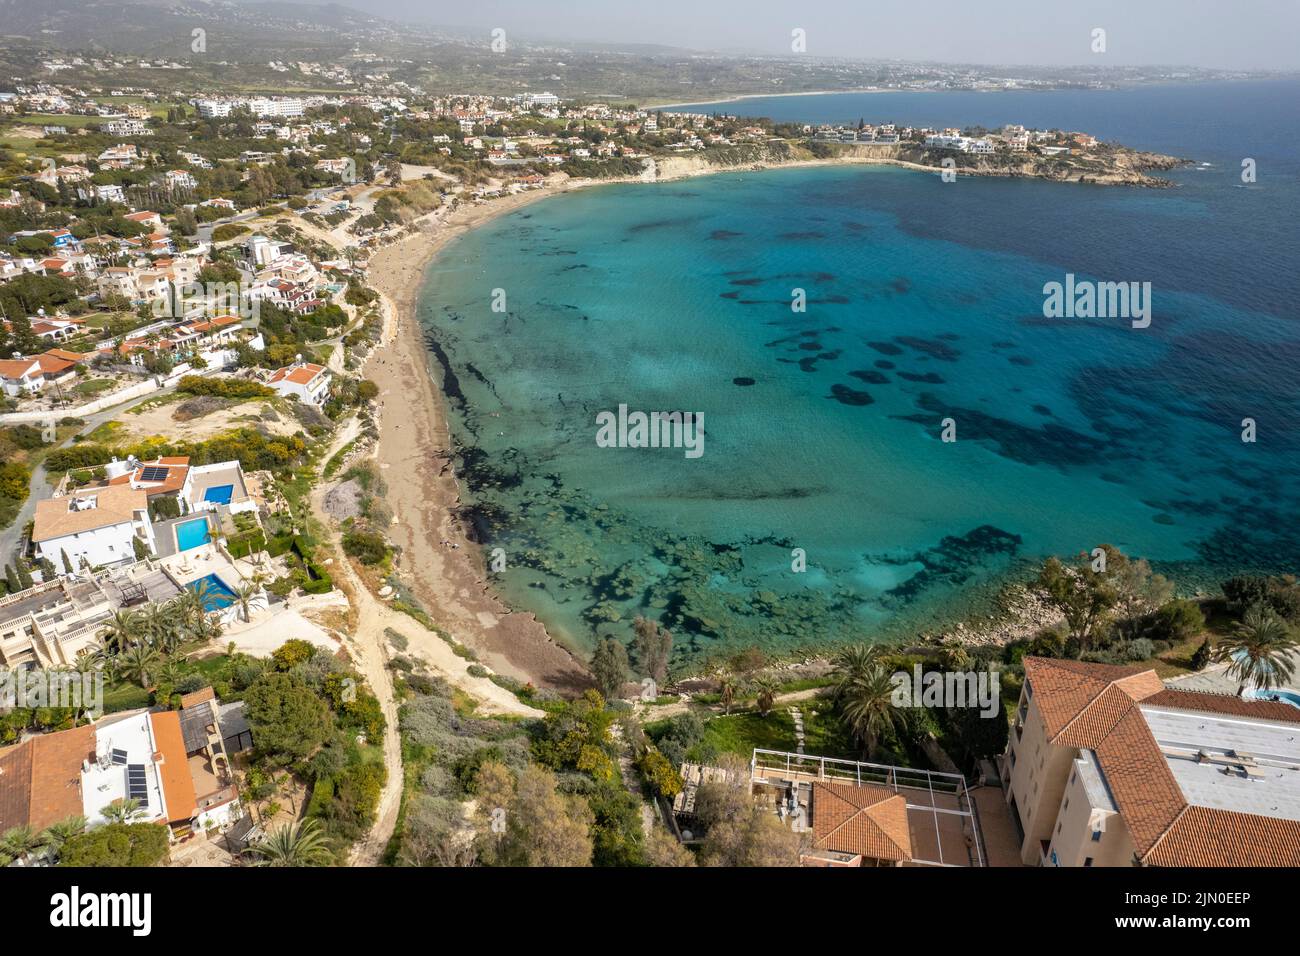 Strand der Coral Bay aus der Luft gesehen, Zypern, Europa | vue aérienne de la plage de Coral Bay, Chypre, Europe Banque D'Images